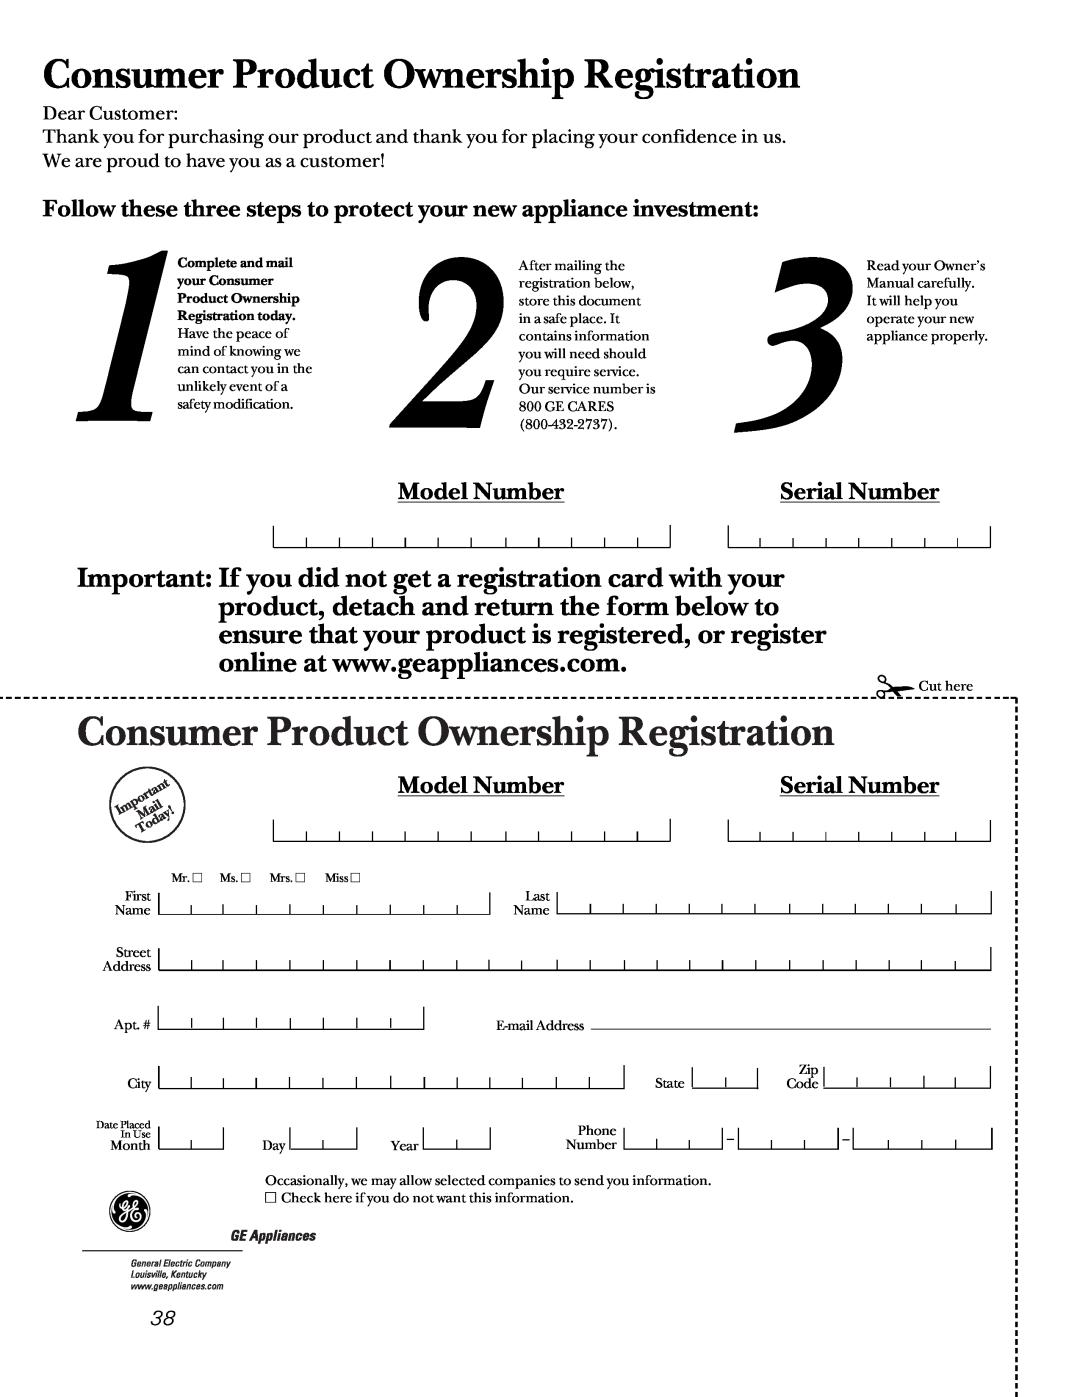 Sharp JB960, JBP85, JB940, JB965 owner manual Model Number, Serial Number, Consumer Product Ownership Registration 